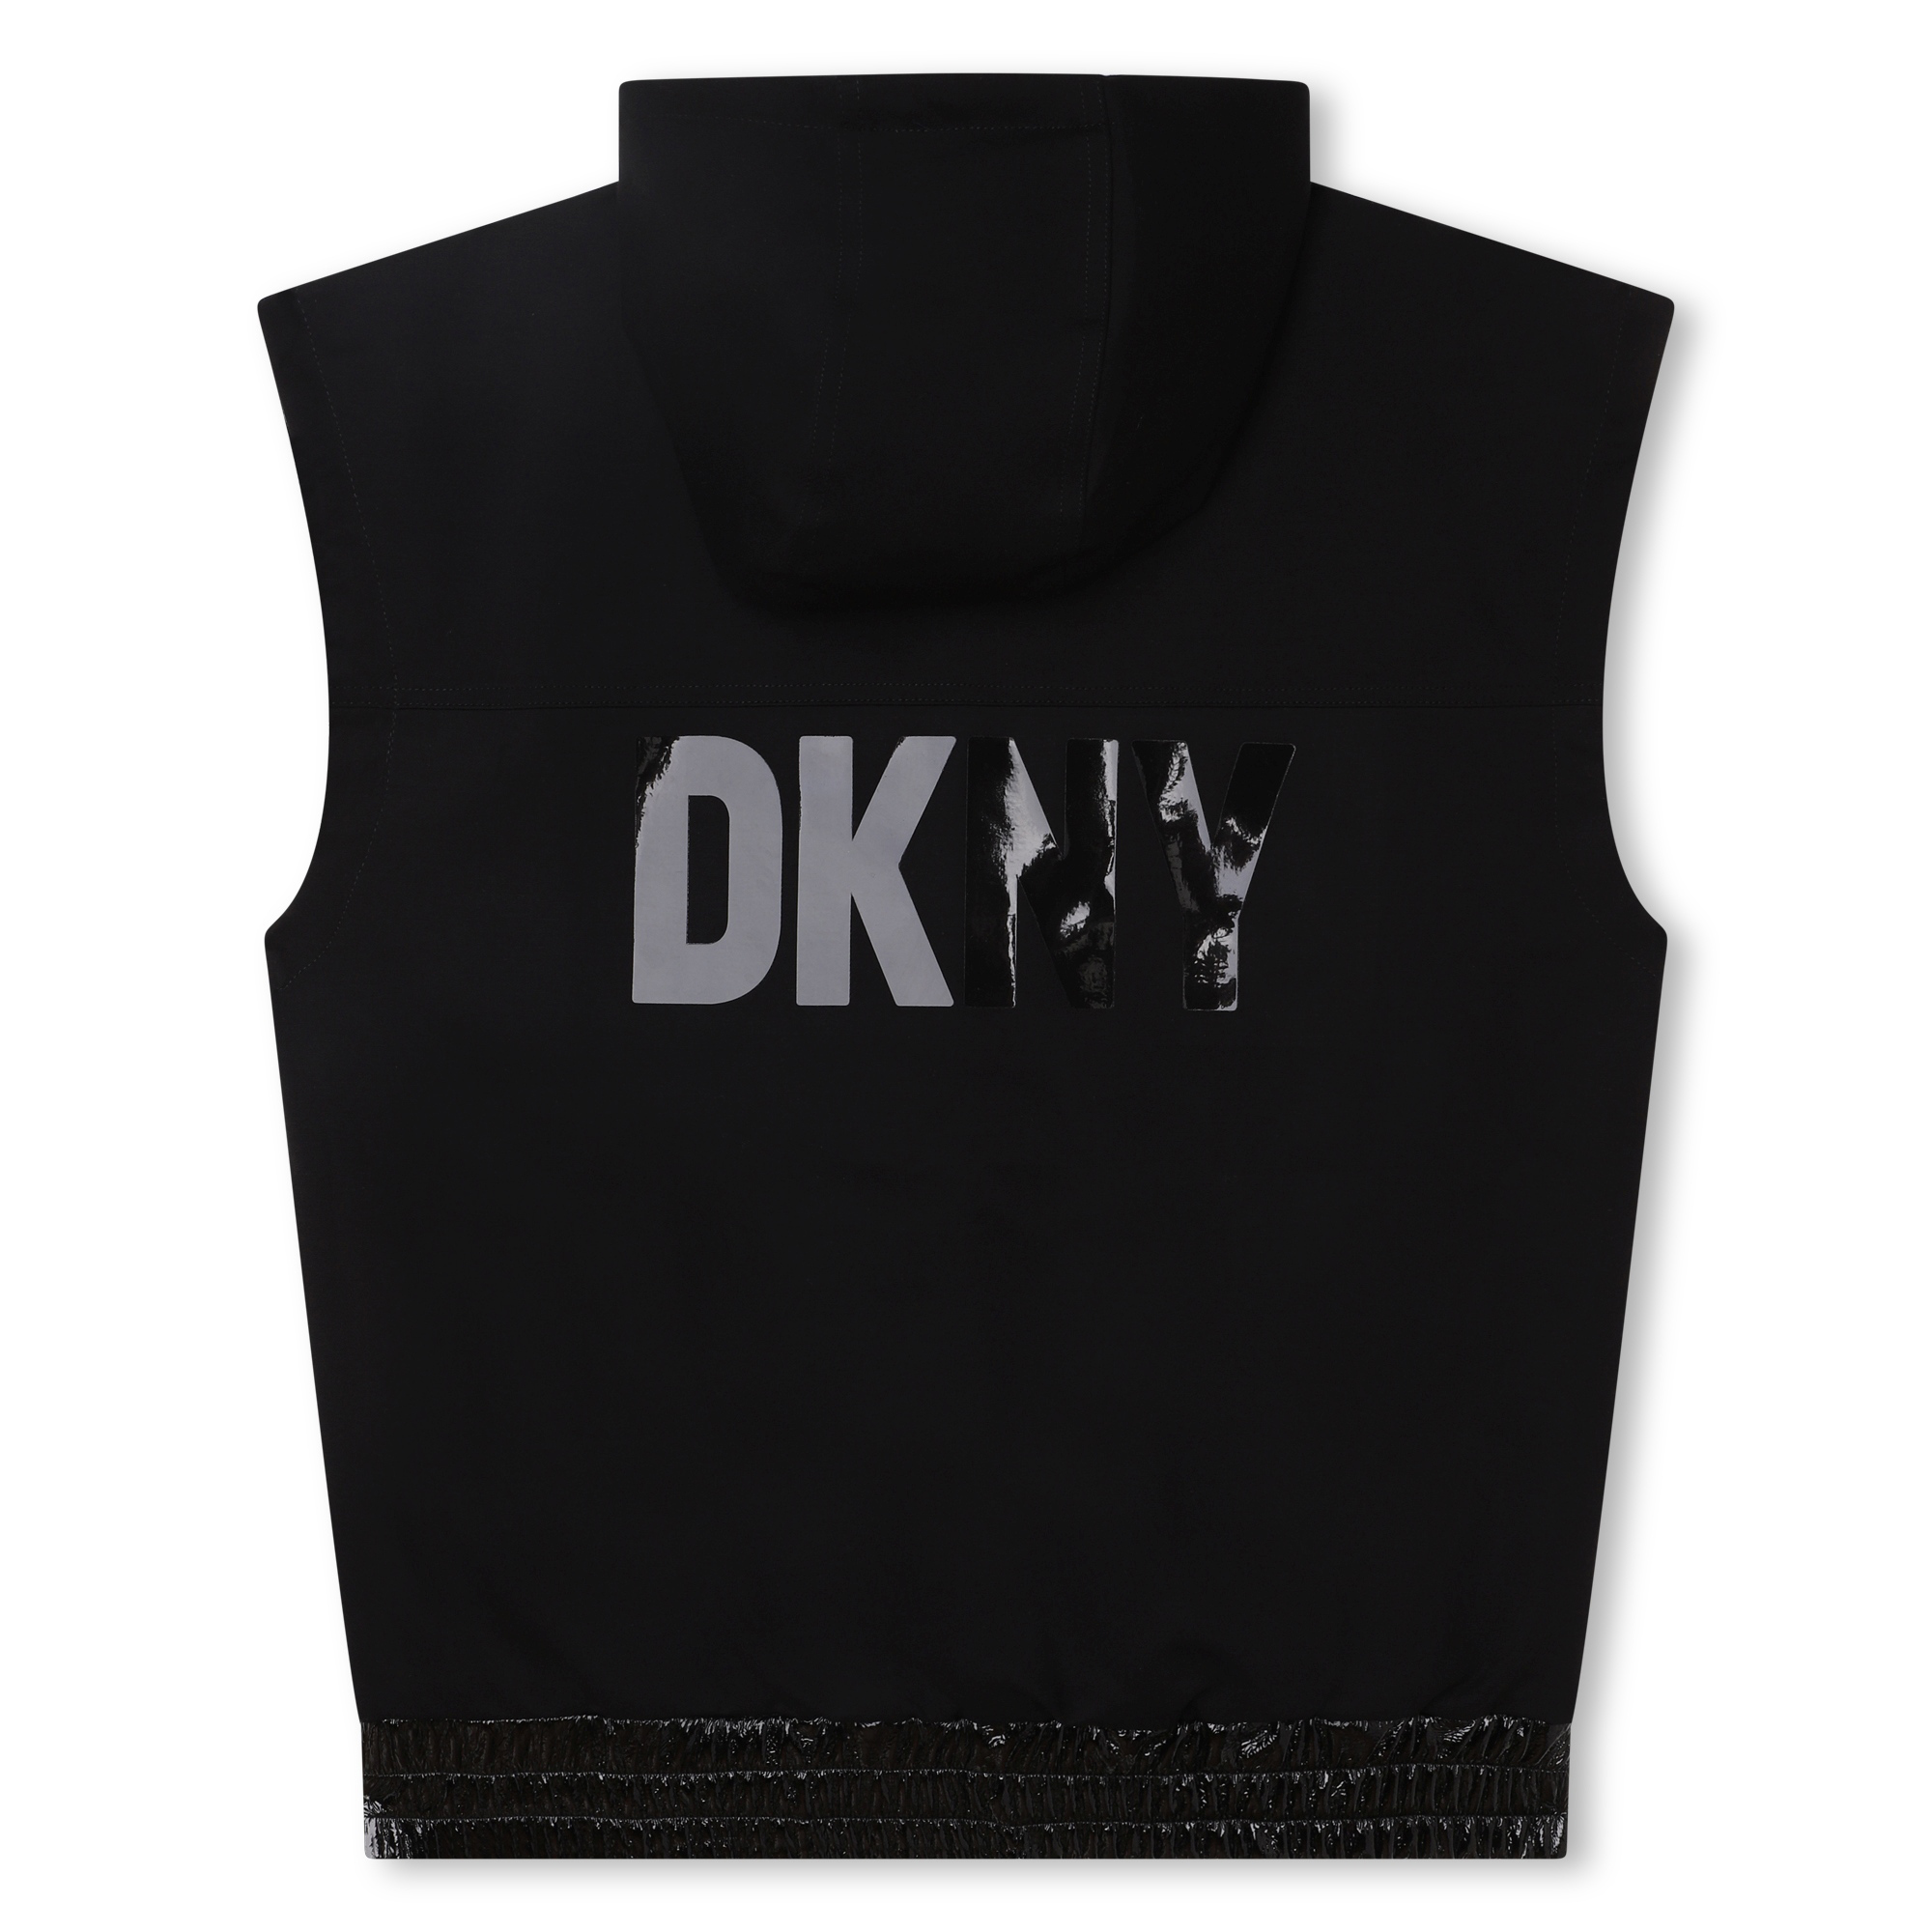 DKNY - Girls Black Logo Leggings